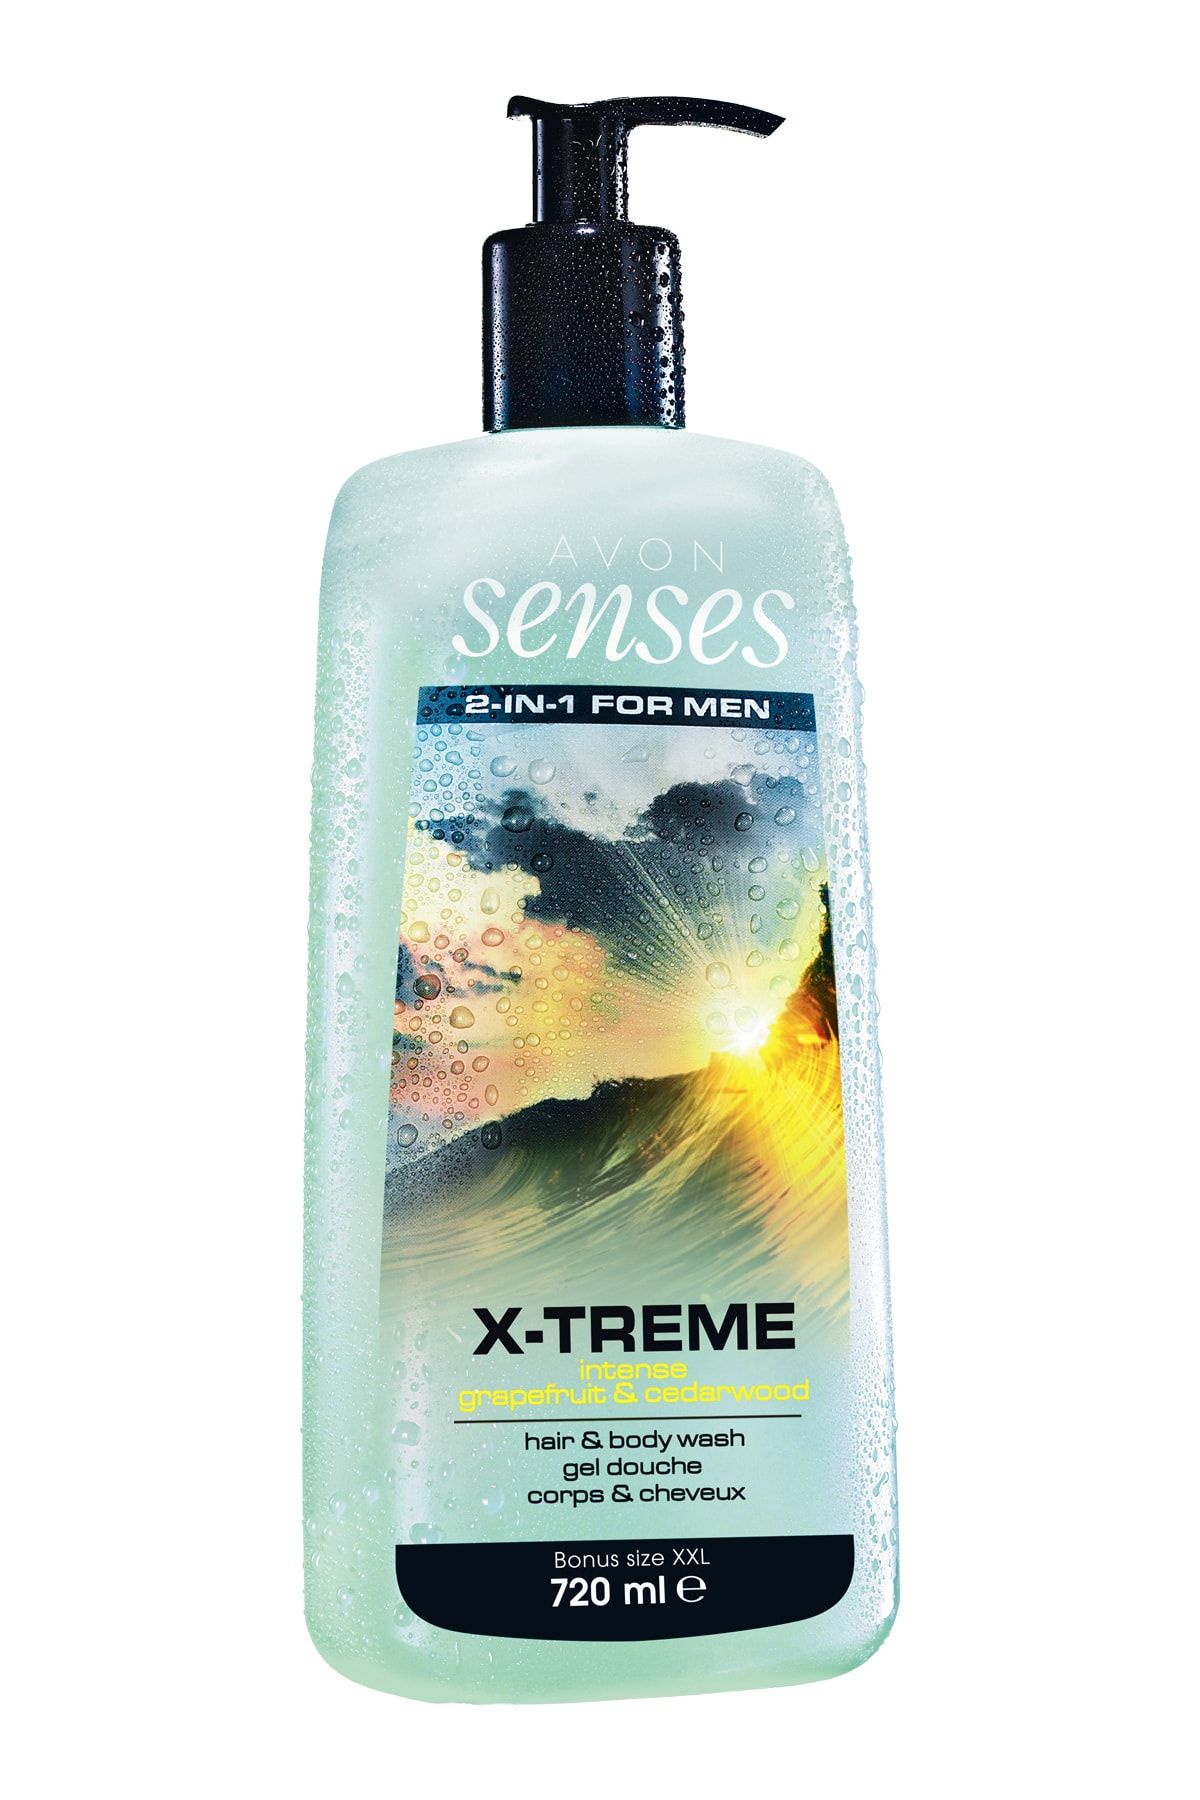 Avon Senses X-Treme Intense Erkekler için Saç & Vücut Şampuanı 720 ml 8681298961796